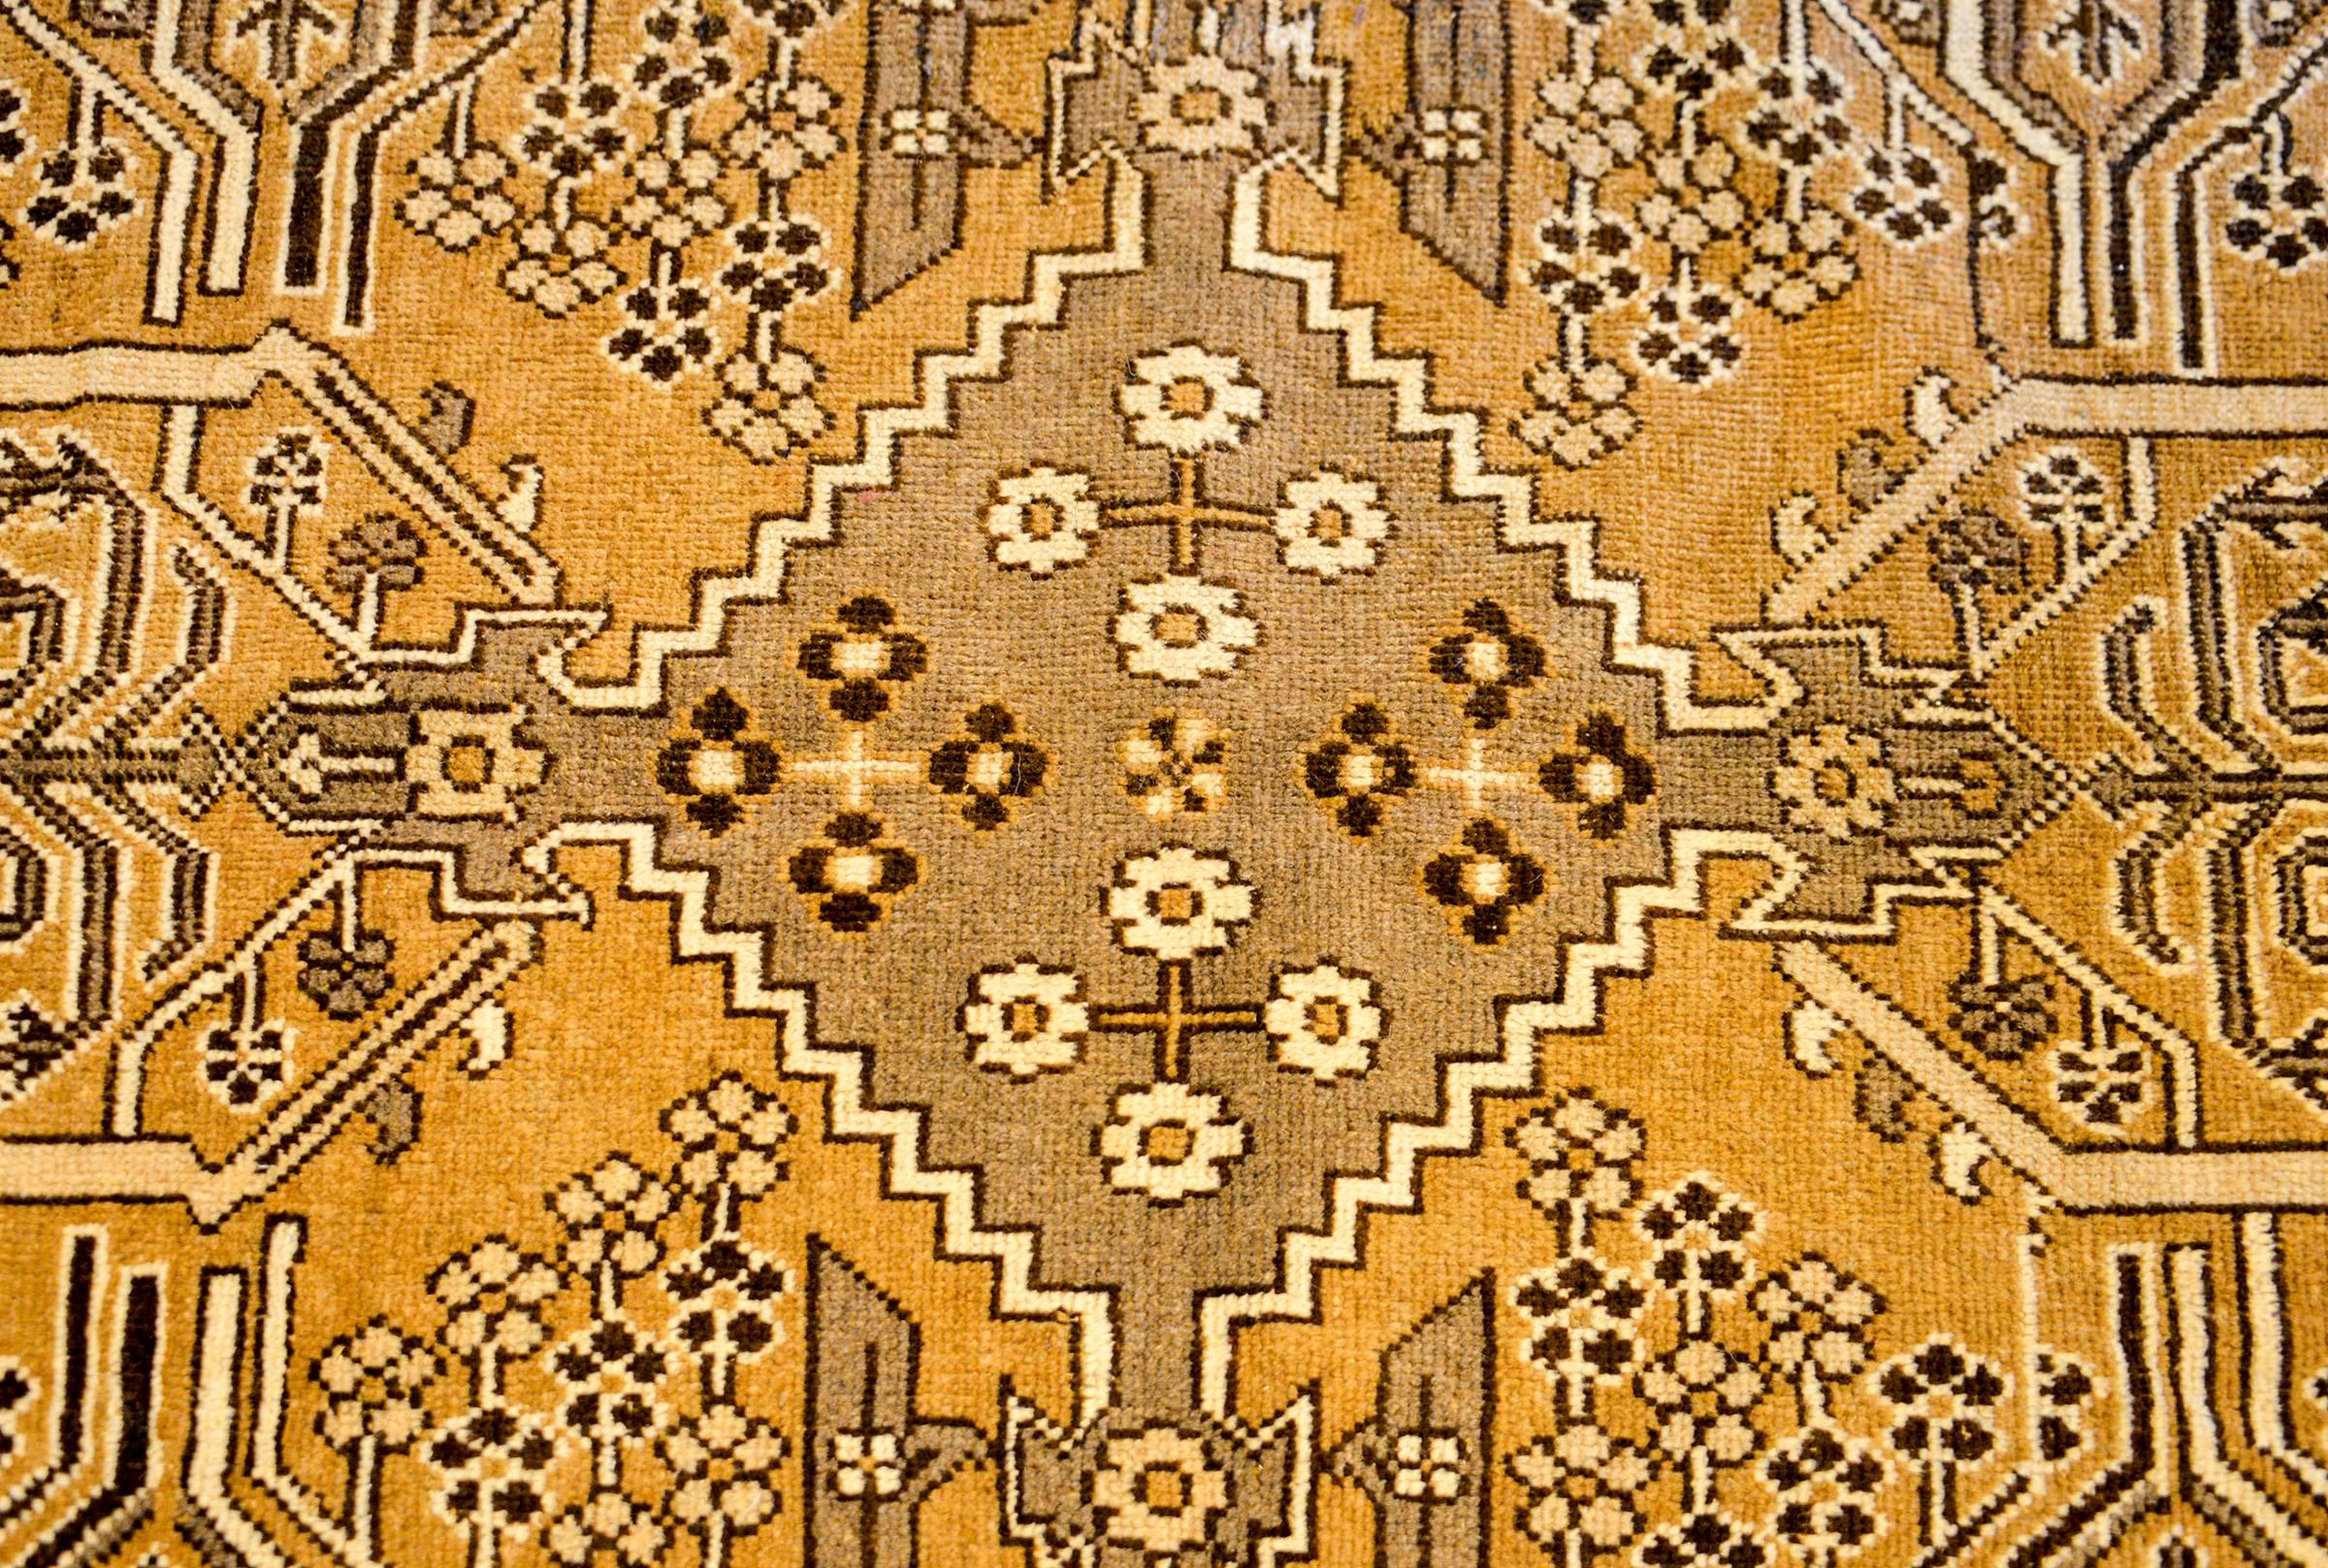 Ein wundervoller persischer Bachtiari-Teppich aus dem frühen 20. Jahrhundert mit einer herrlich natürlichen, ungefärbten Farbpalette aus Wolle. Das zentrale Feld ist gespiegelt und zeigt mehrere geometrische Muster in Rautenform sowie ein paar